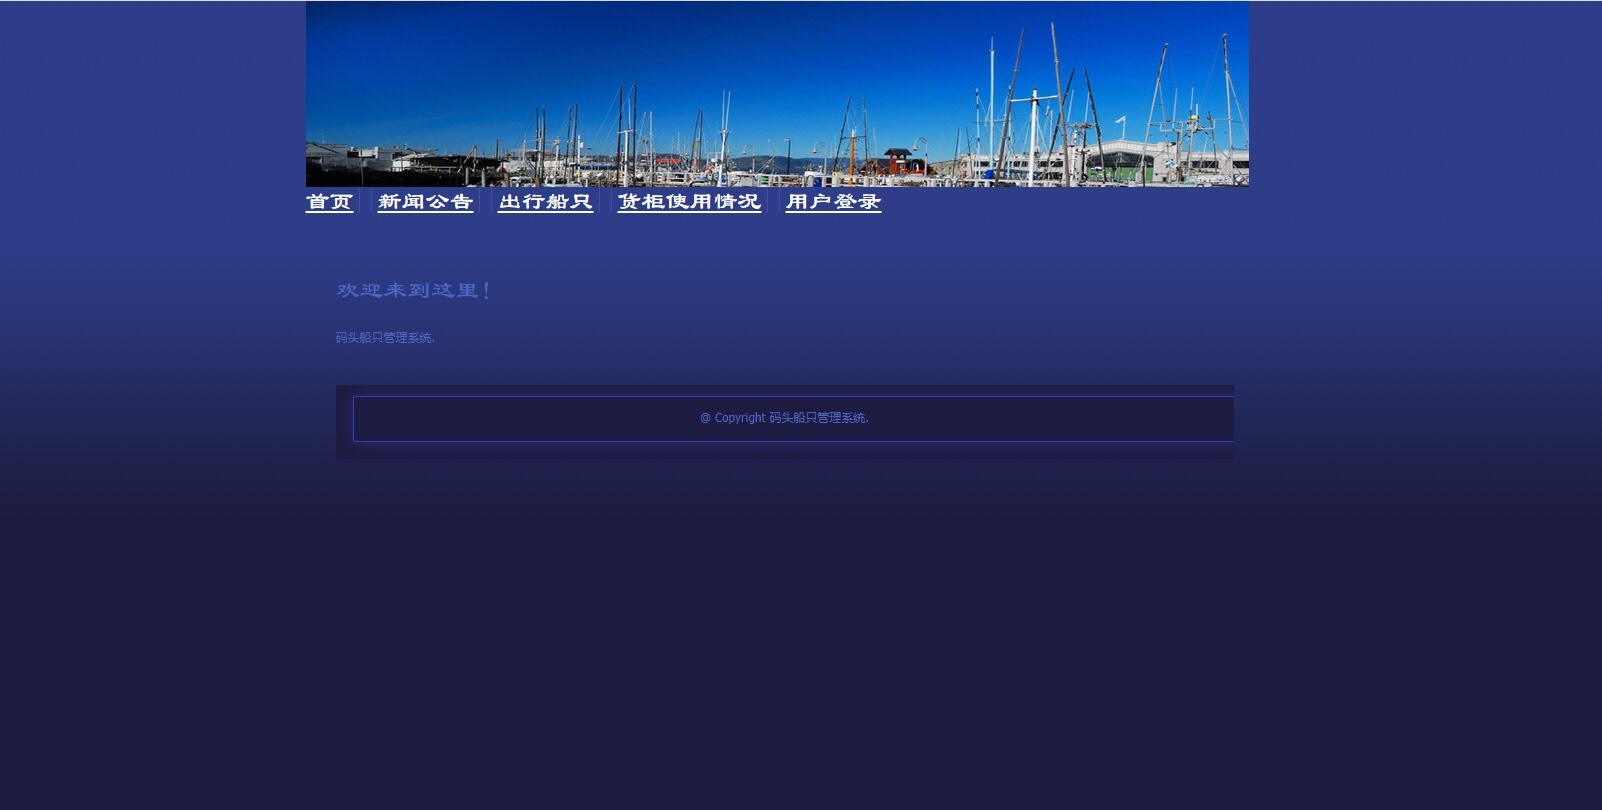 101-java jsp ssh2框架的码头船只管理系统